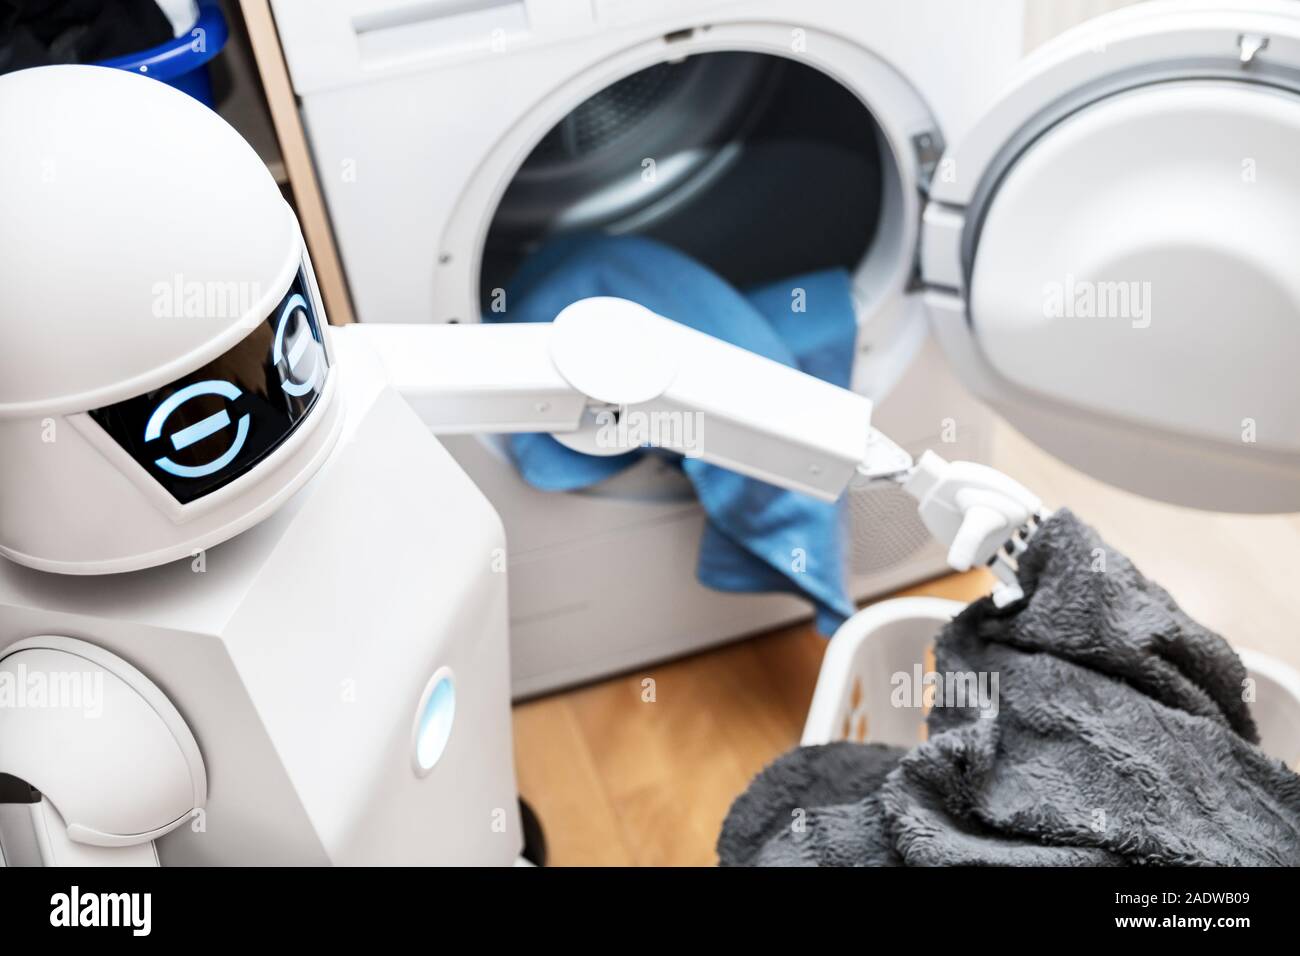 Ambient Assisted Living robot o cyborg está trabajando en el hogar. robot es poner la ropa en el secador Foto de stock